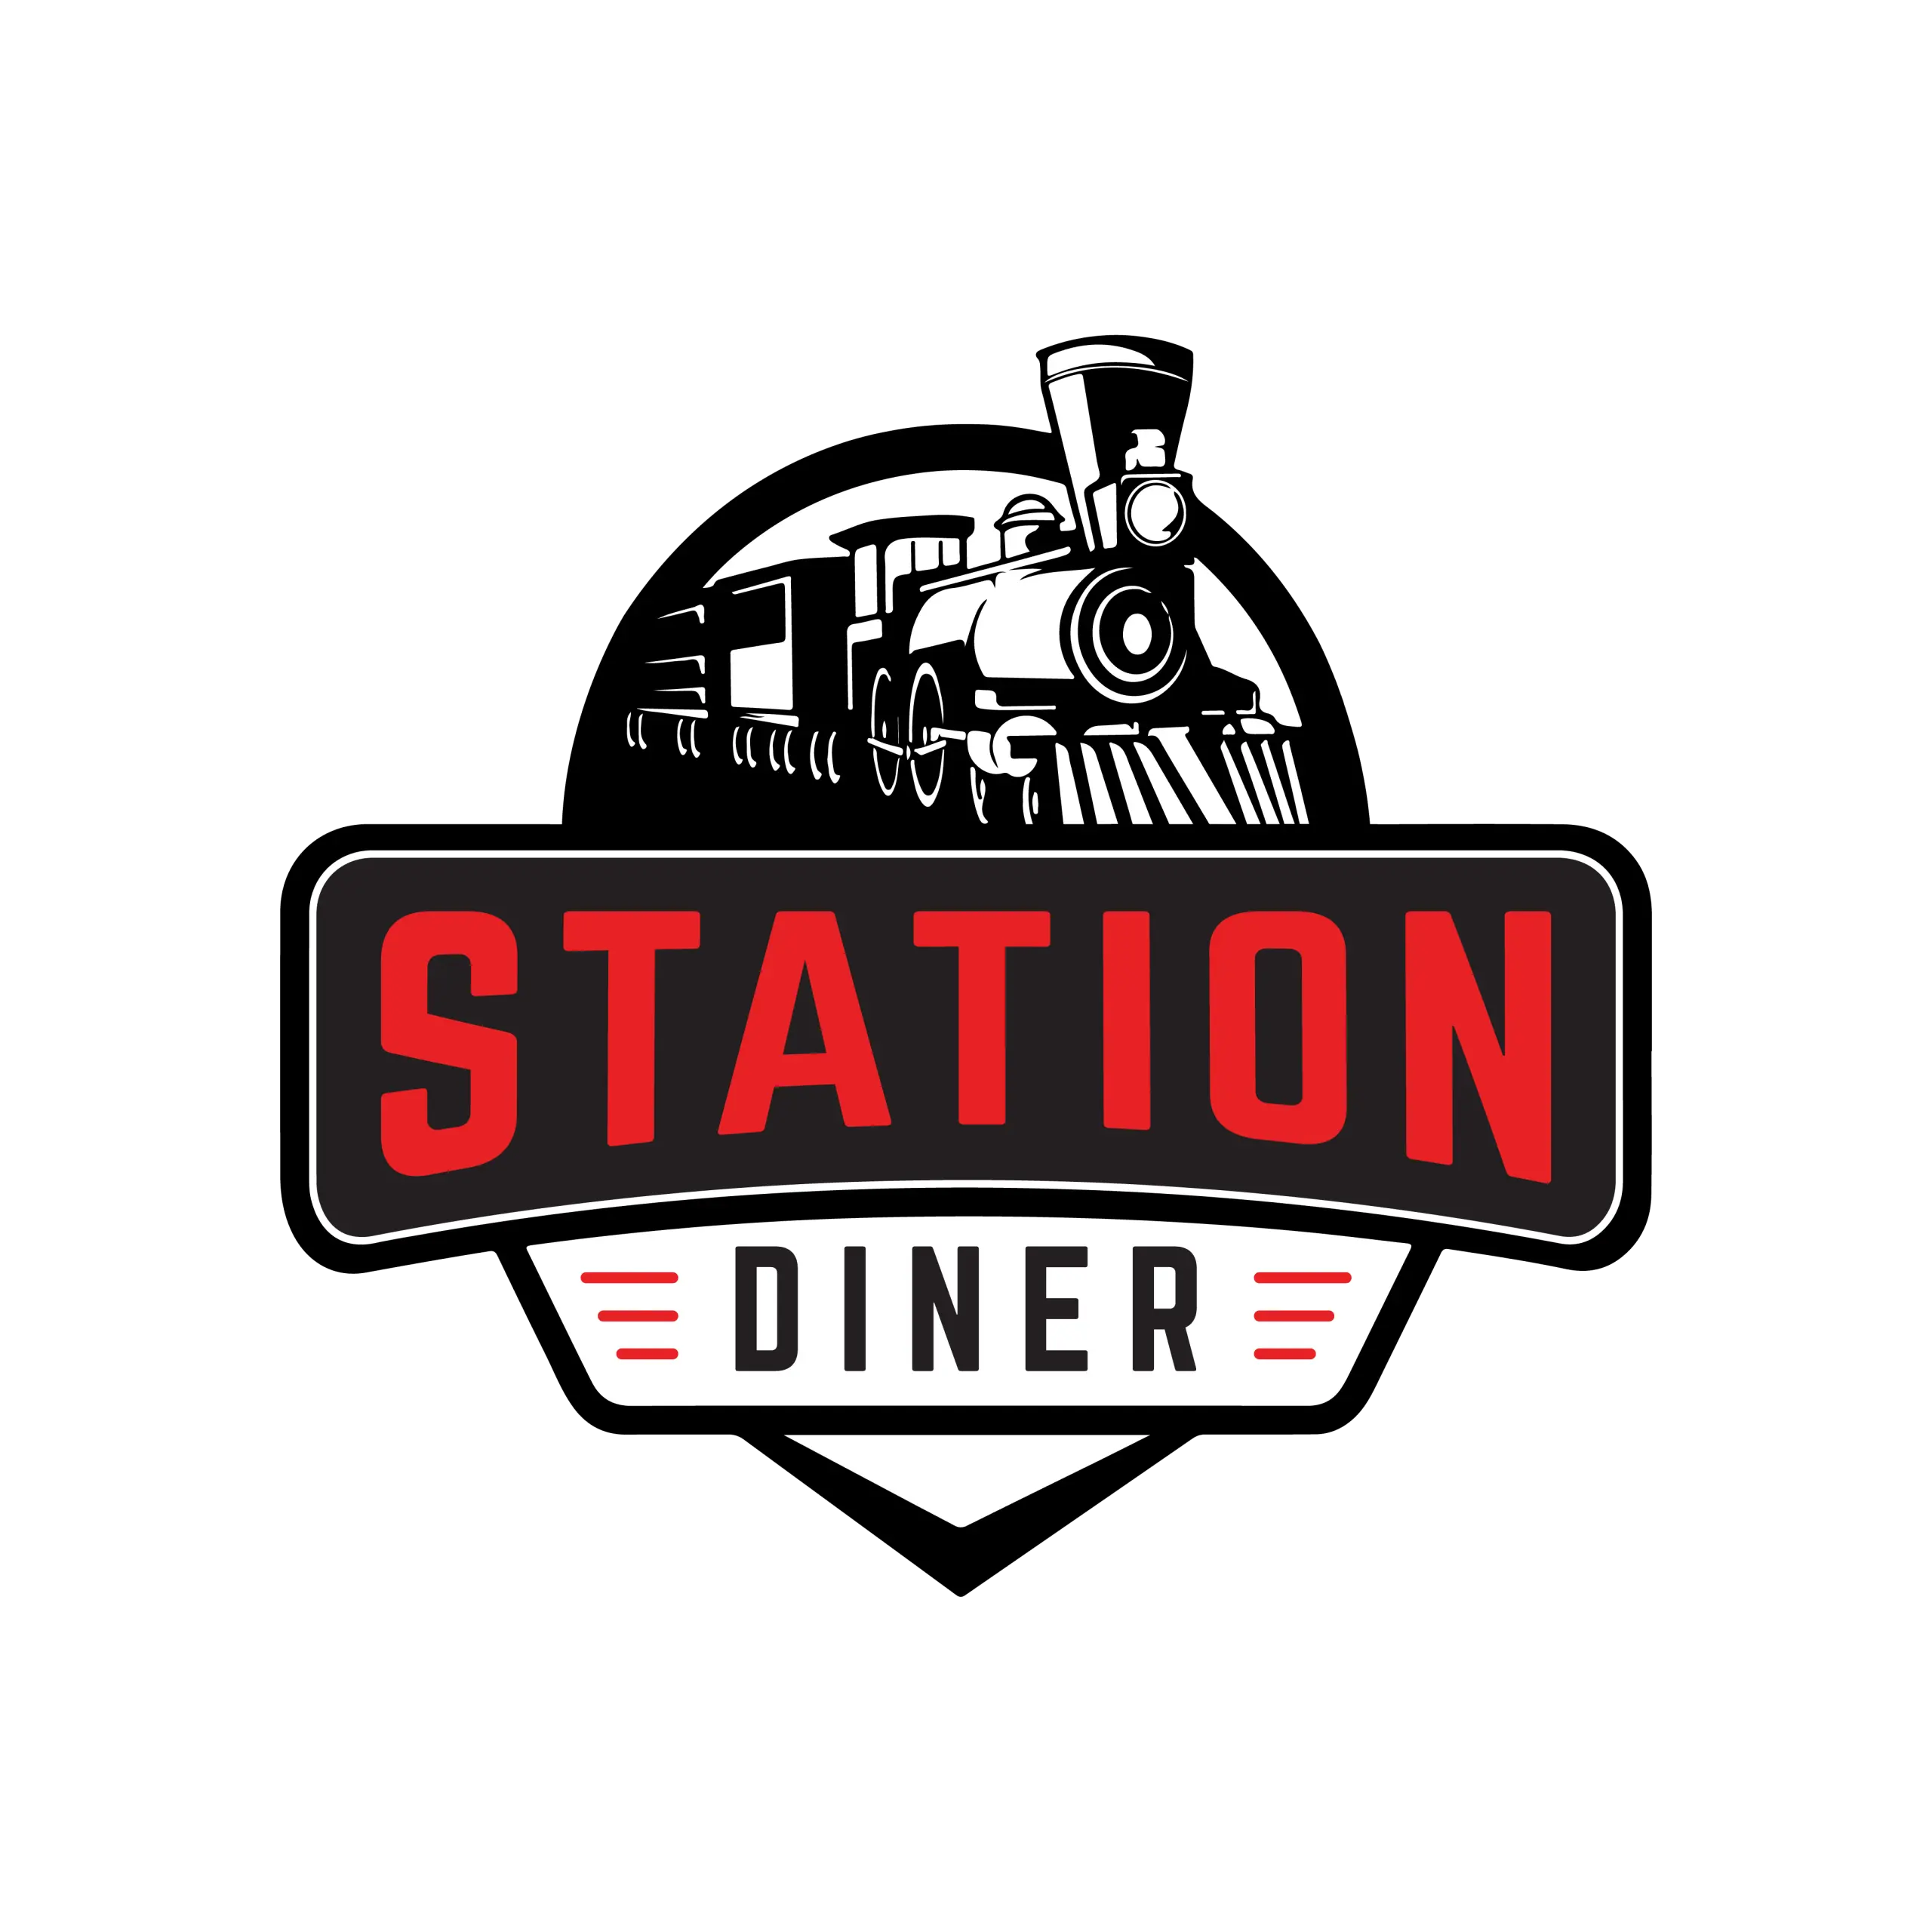  Station Diner logo